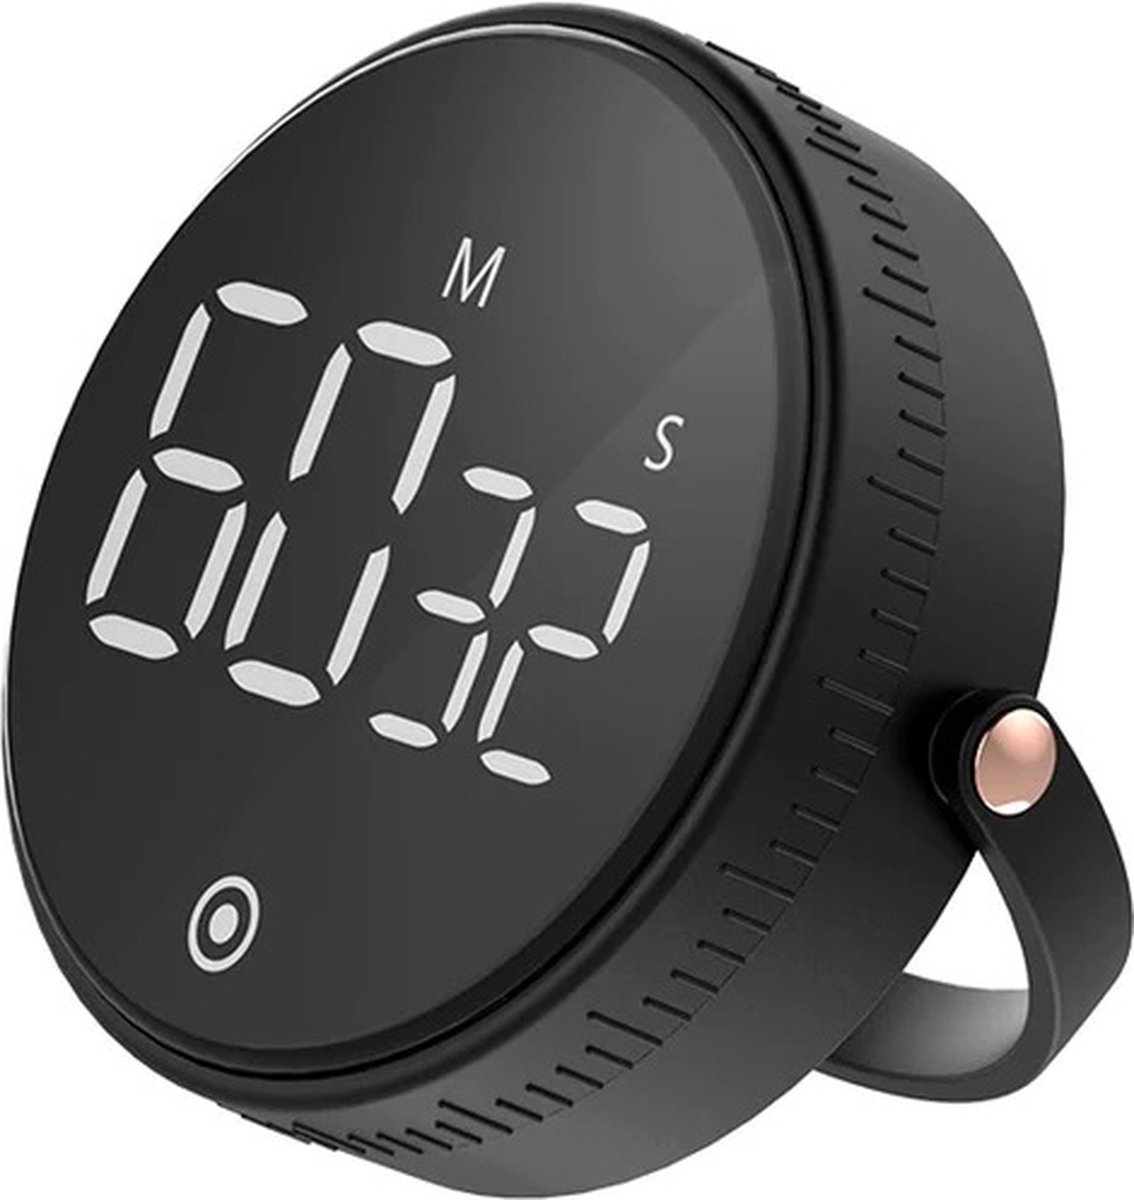 Digitale Kookwekker Zwart met Houder van METU-Online - Smart Timer - LED Display - Magnetisch met Handige Draaiknop - Barbecue kookwekker magneet - BBQ wekker - Merkloos